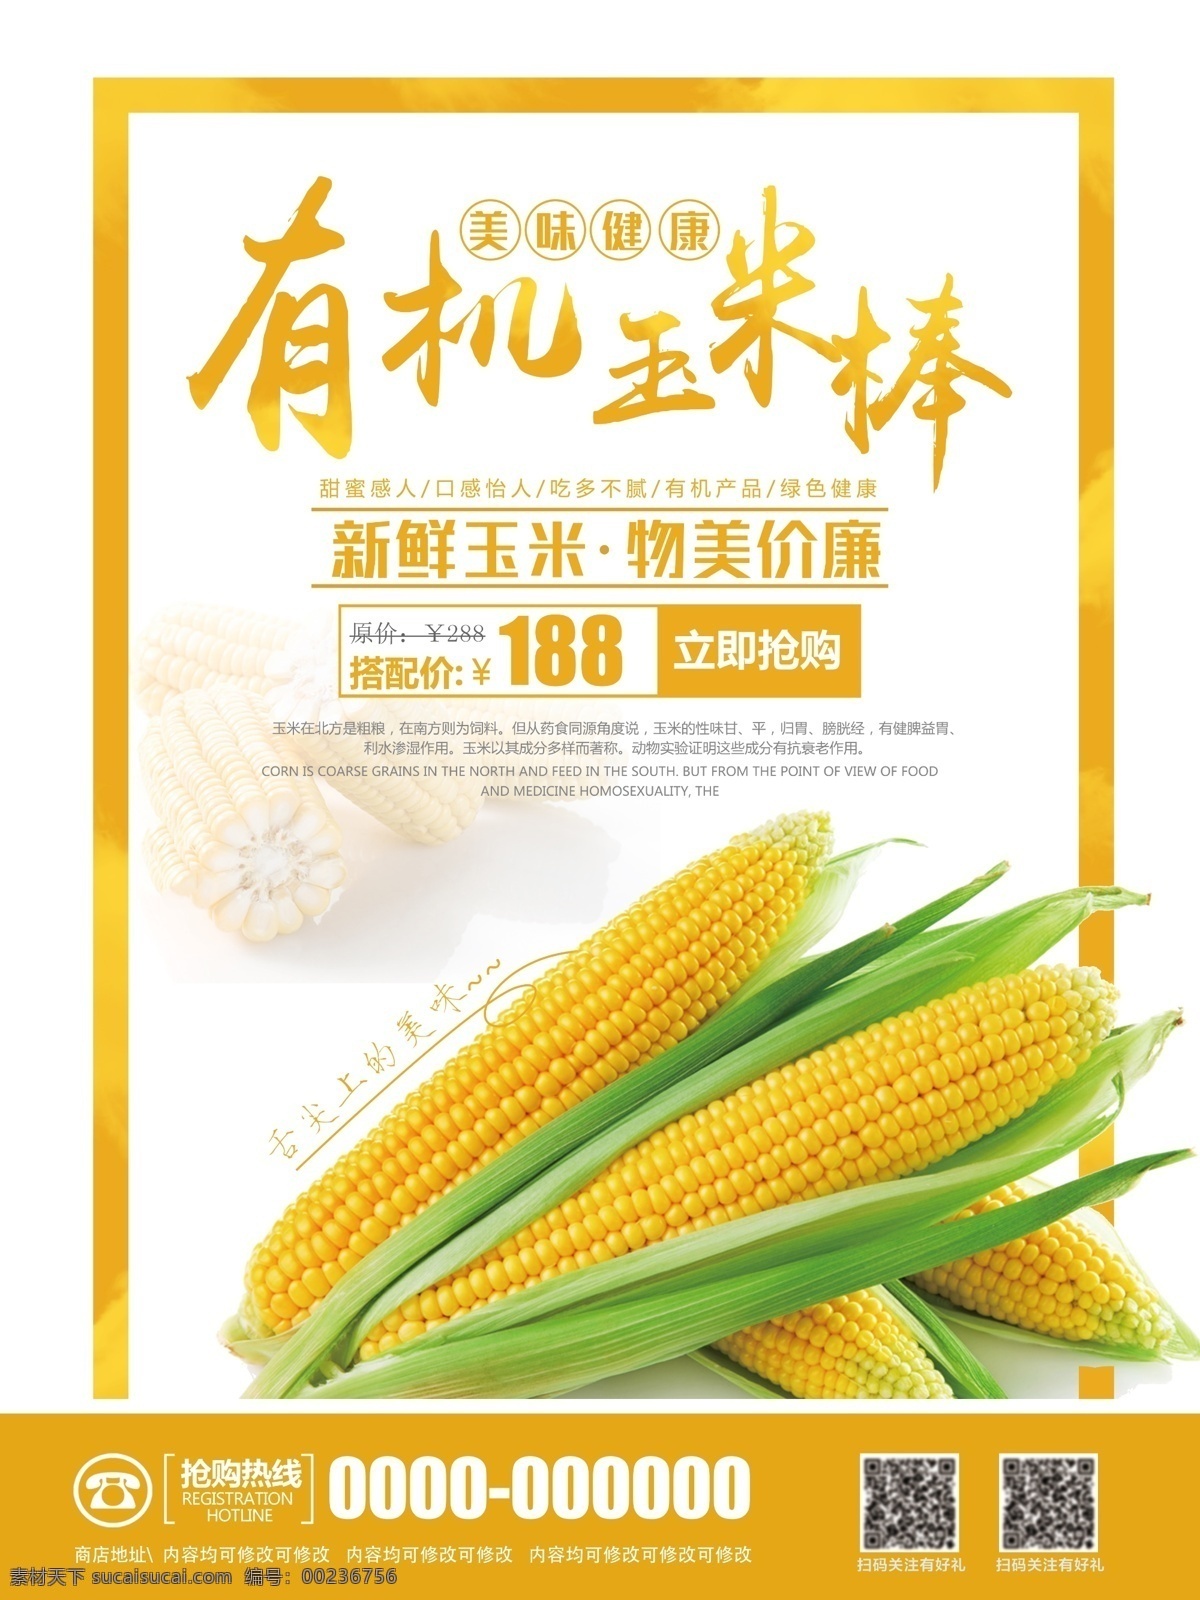 创意 有机 玉米 促销 海报 五谷杂粮 玉米海报 玉米包装 玉米早餐 玉米谷物 玉米汁 玉米种子 玉米粒 玉米田 玉米棒 玉米店 松仁玉米 种玉米